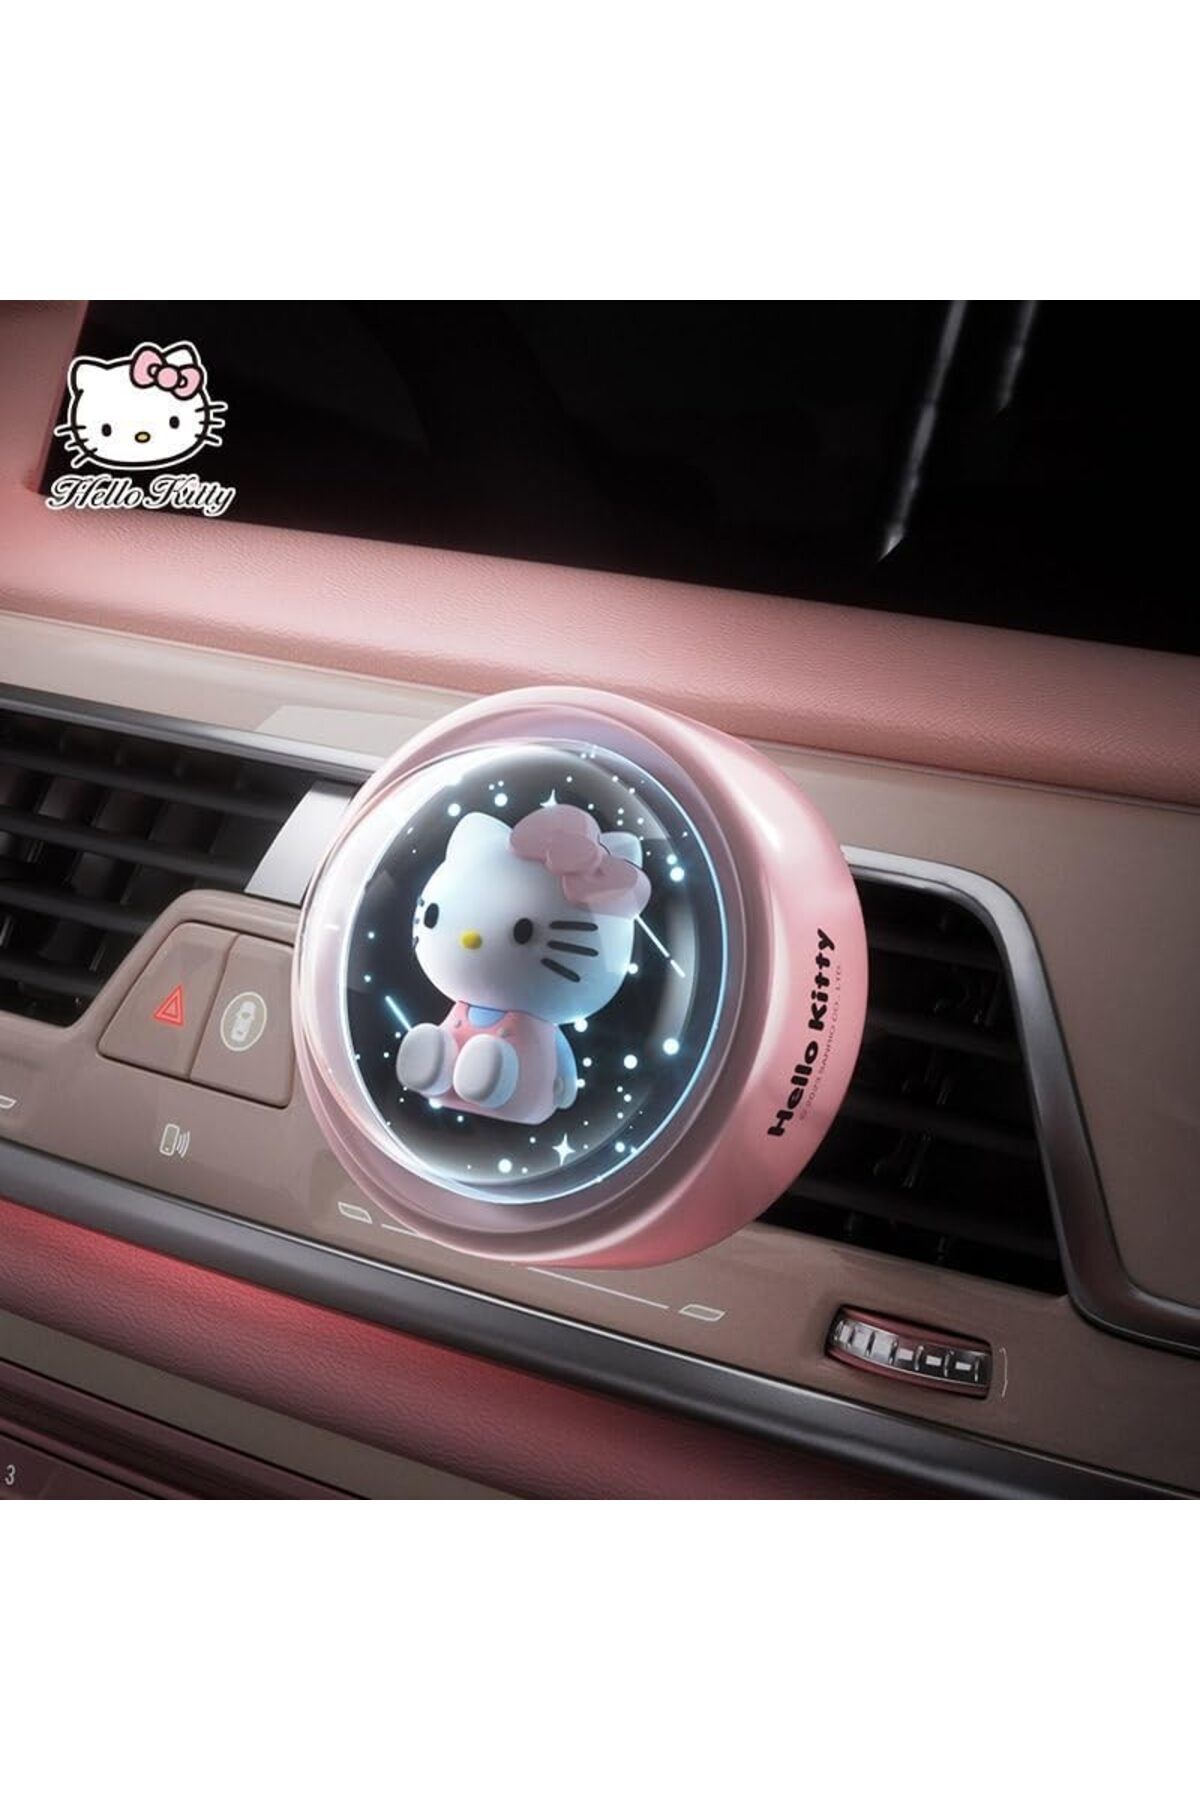 İDEAL ATOM Hello Kitty Araç Kokusu Araba Havalandırma,aydınlık Hava Çıkışı Parfüm . Kızlar Için Hediye